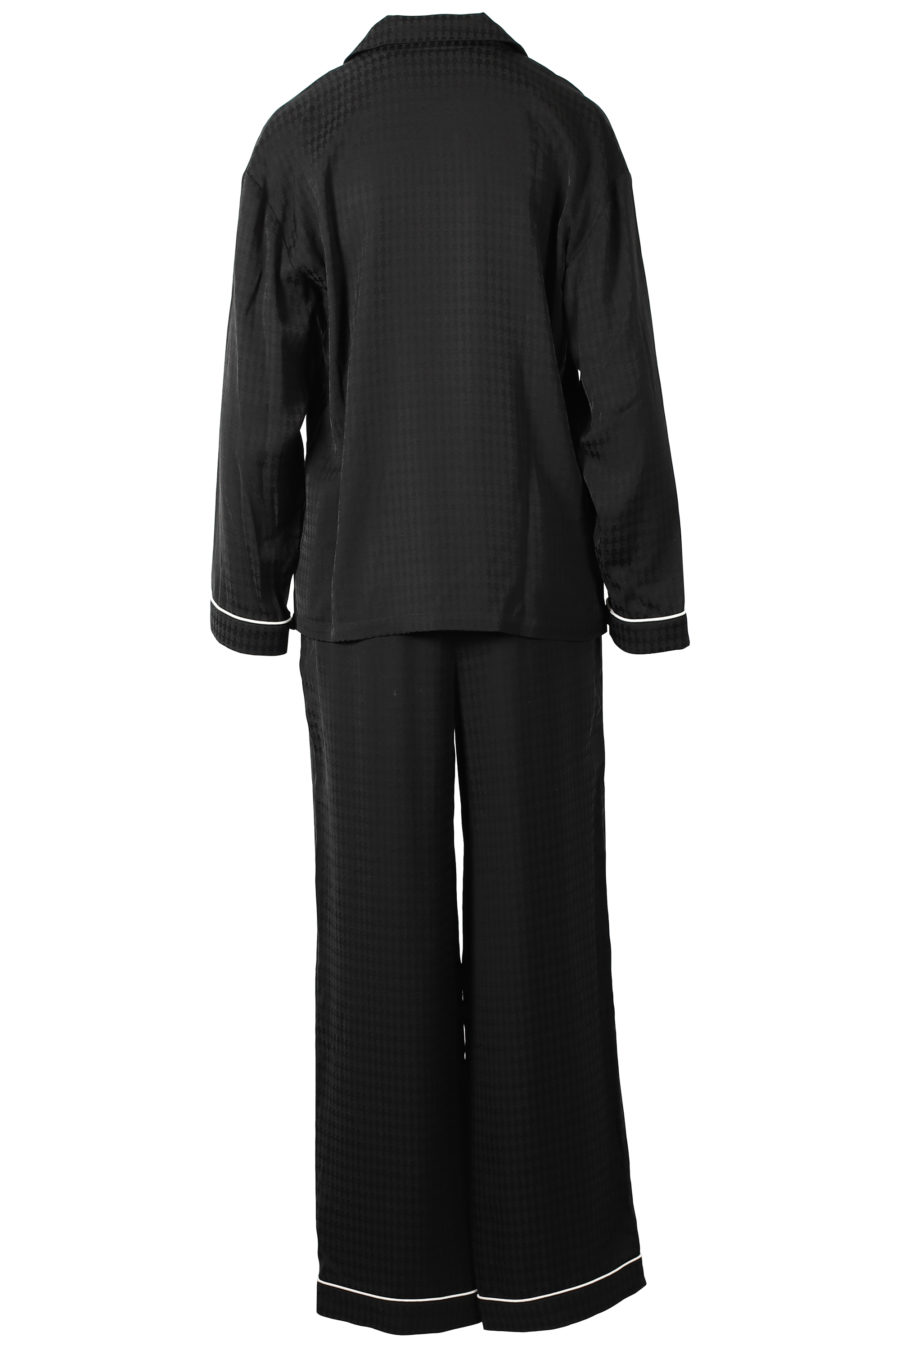 Schwarzer Pyjama-Geschenkset Kameo - IMG 3188